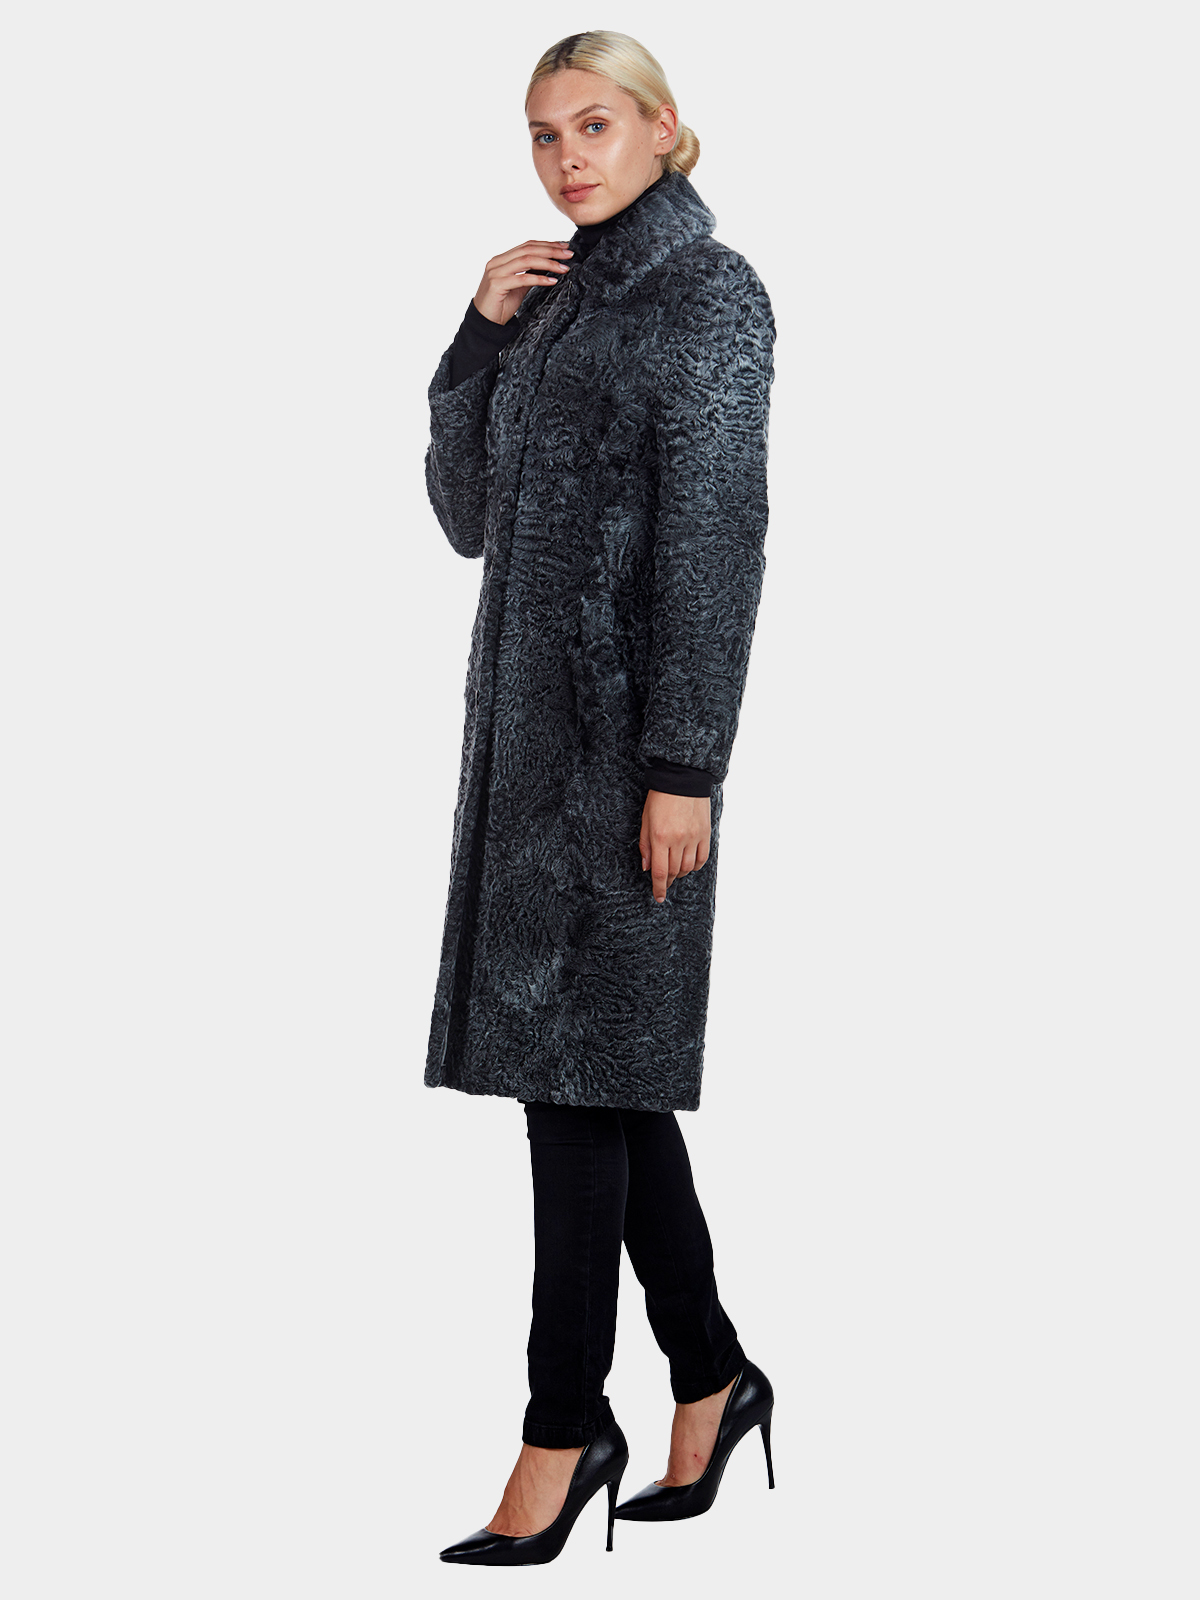 Tombolini Grey Persian Lamb Coat (Women's Small) | Estate Furs